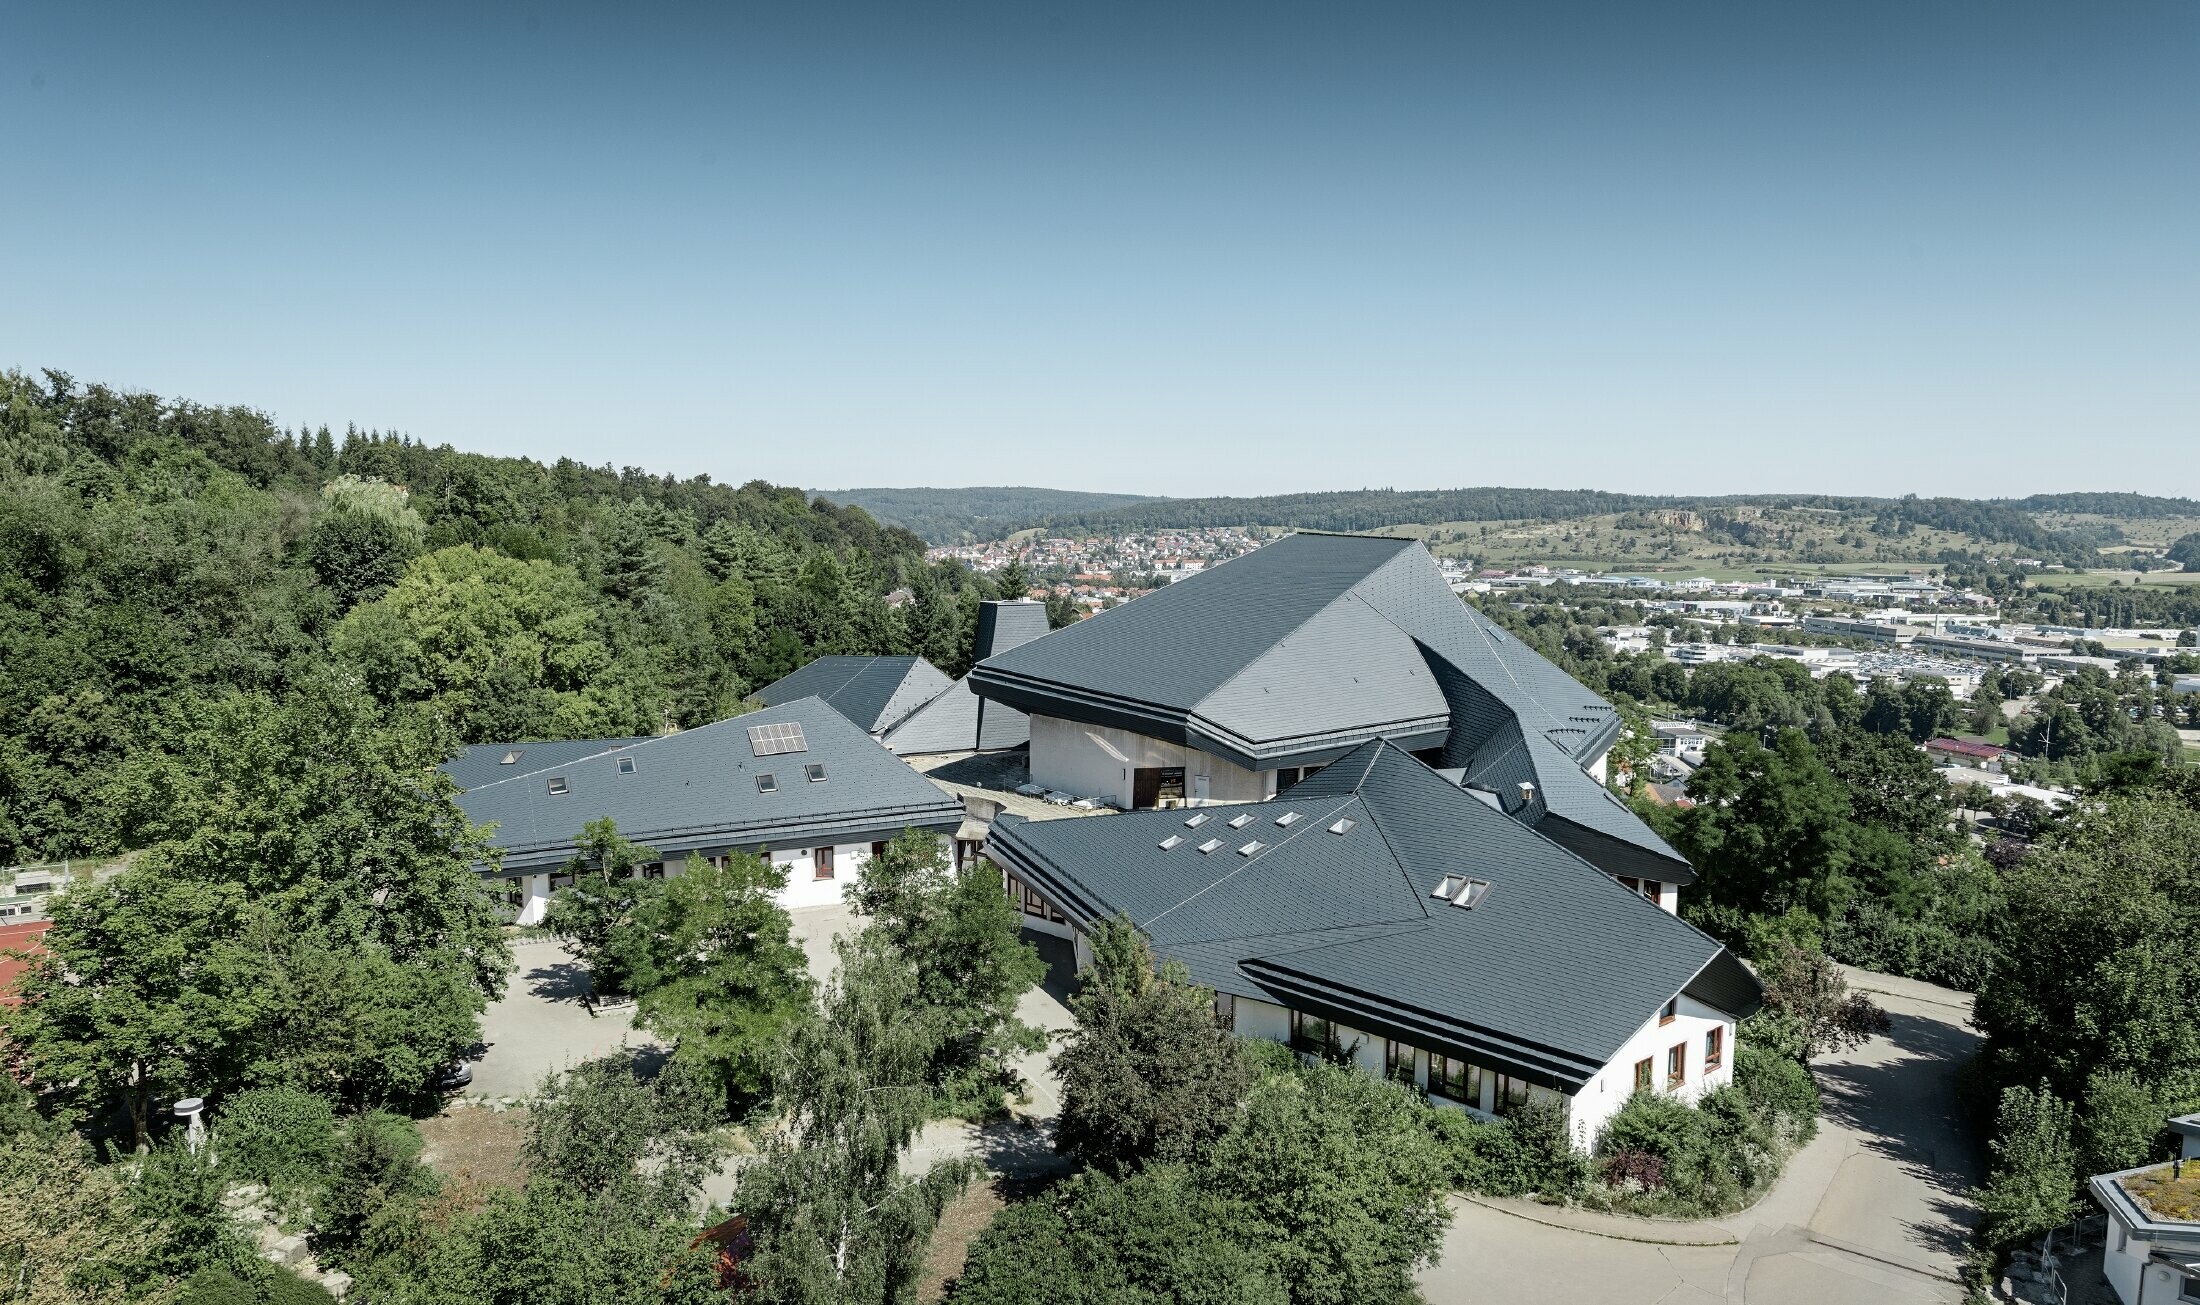 Vrije school in Heidenheim (Duitsland) met groot en onregelmatig dakvlak gerenoveerd met PREFA-dakschindels in antraciet